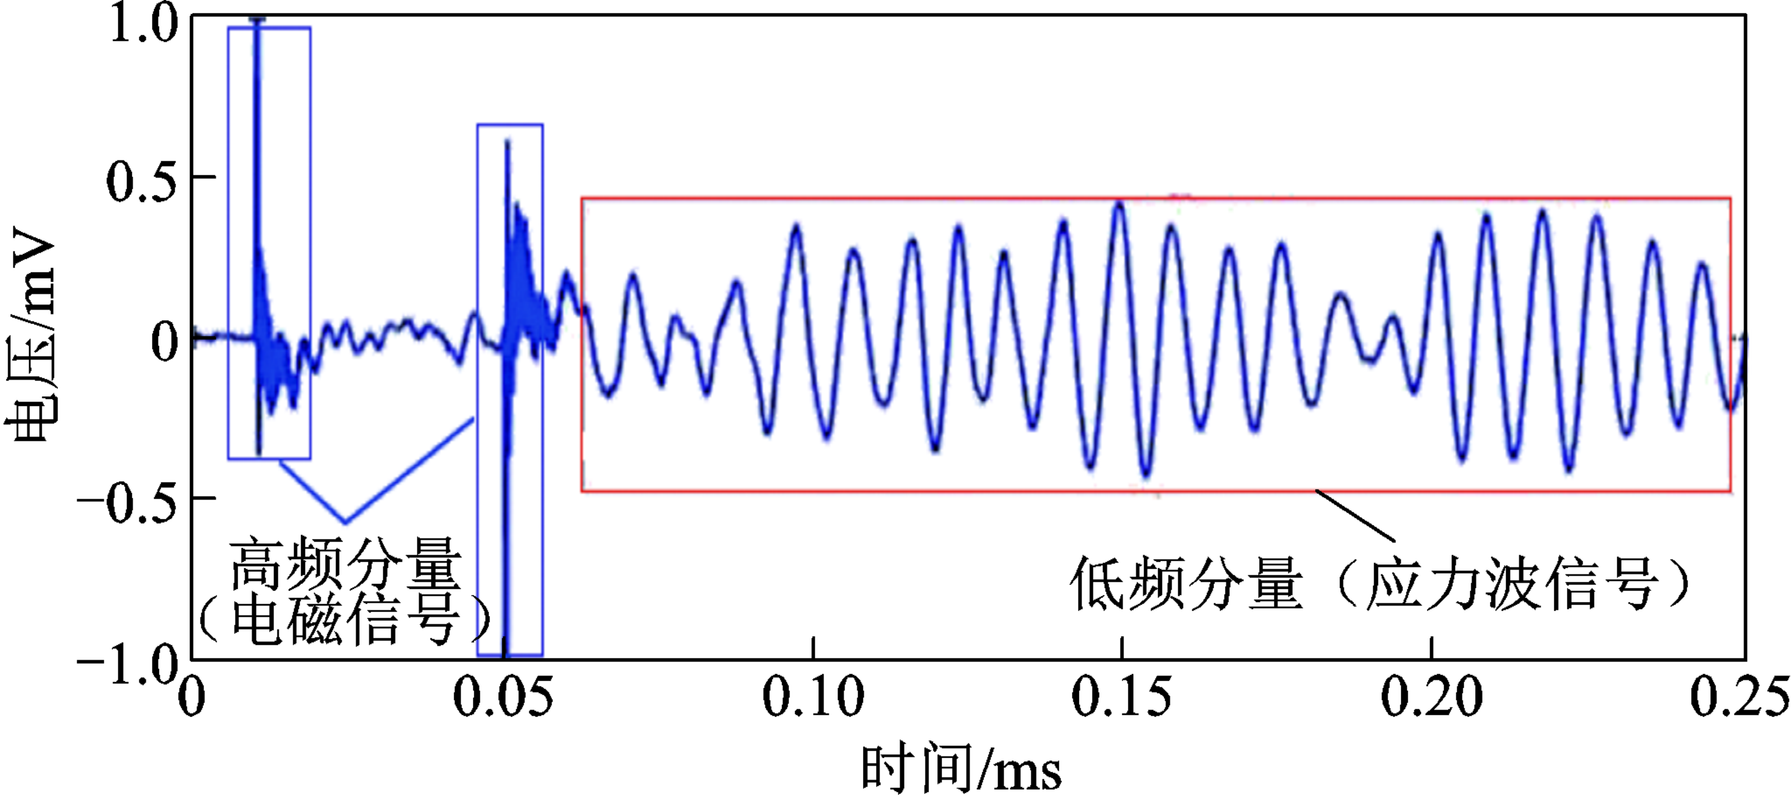 运行中的电力电子器件为什么会产生应力波?